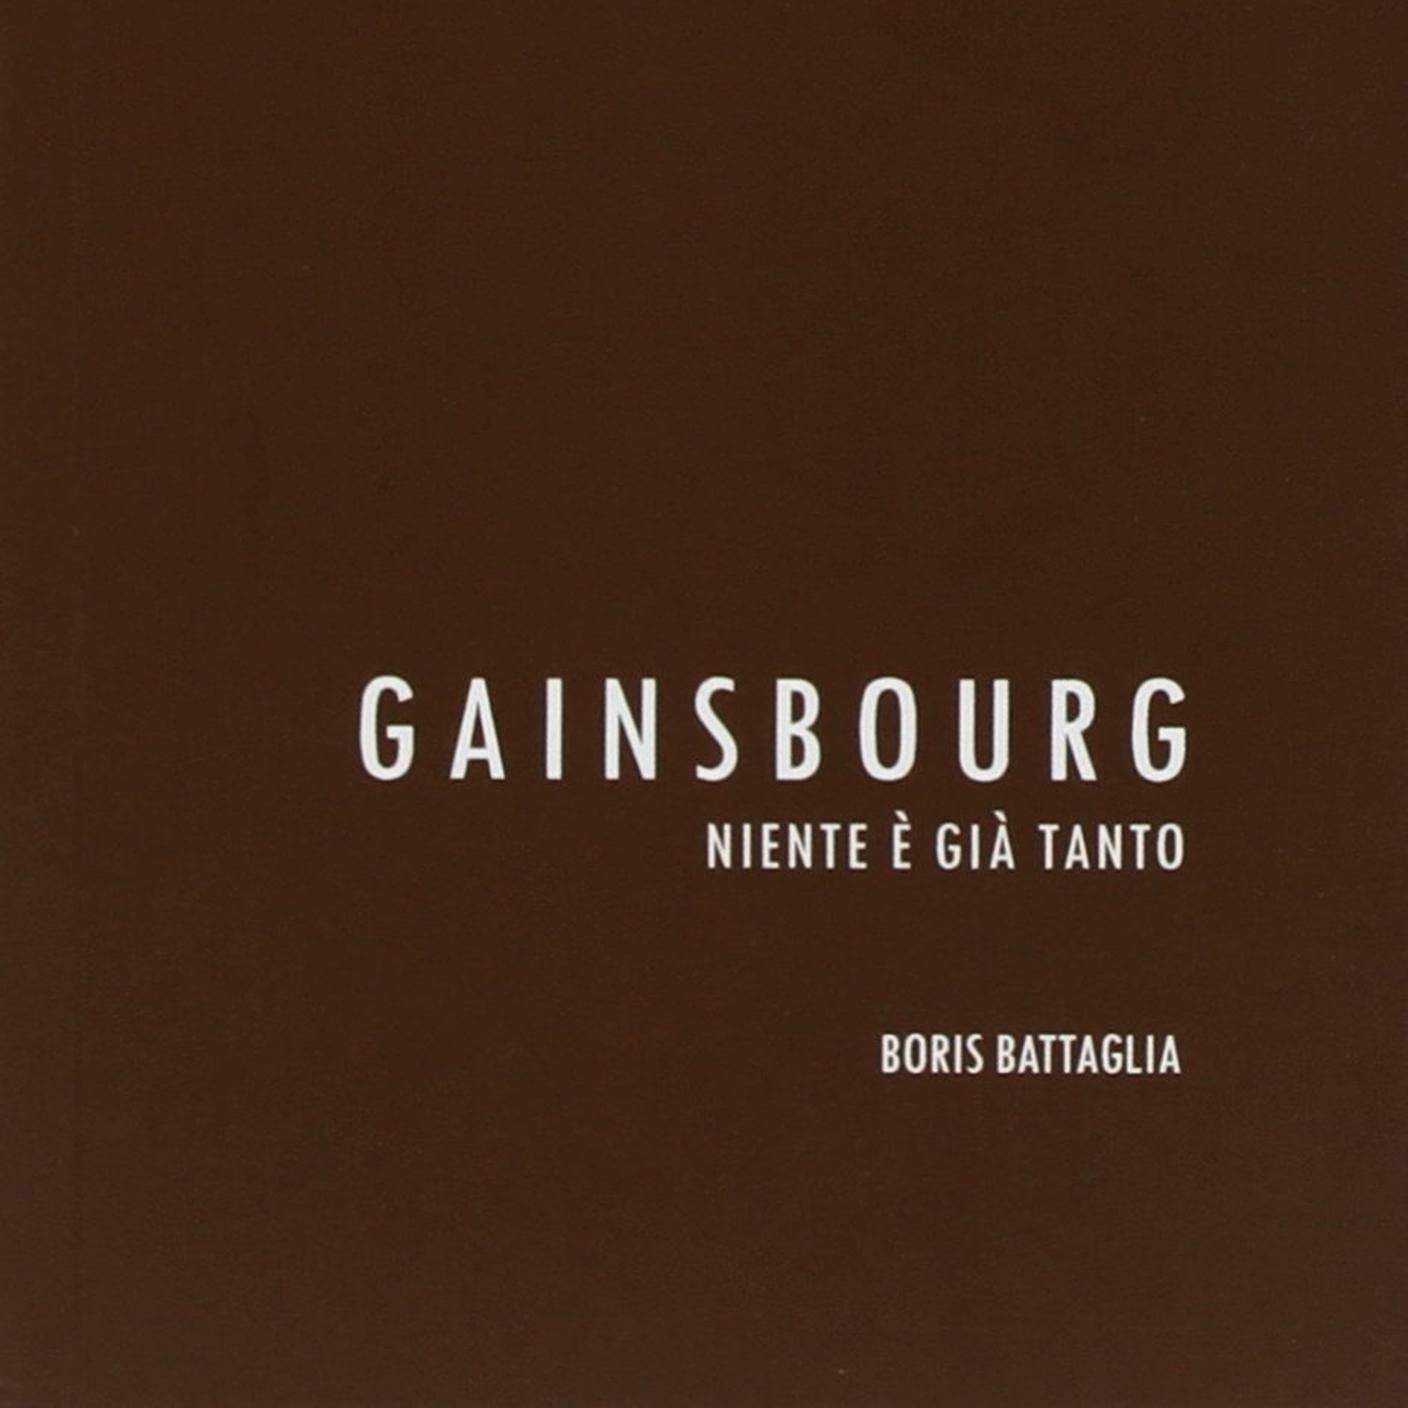  “Gainsbourg. Niente è già tanto” di Boris Battaglia, Armillaria Edizioni (dettaglio copertina)